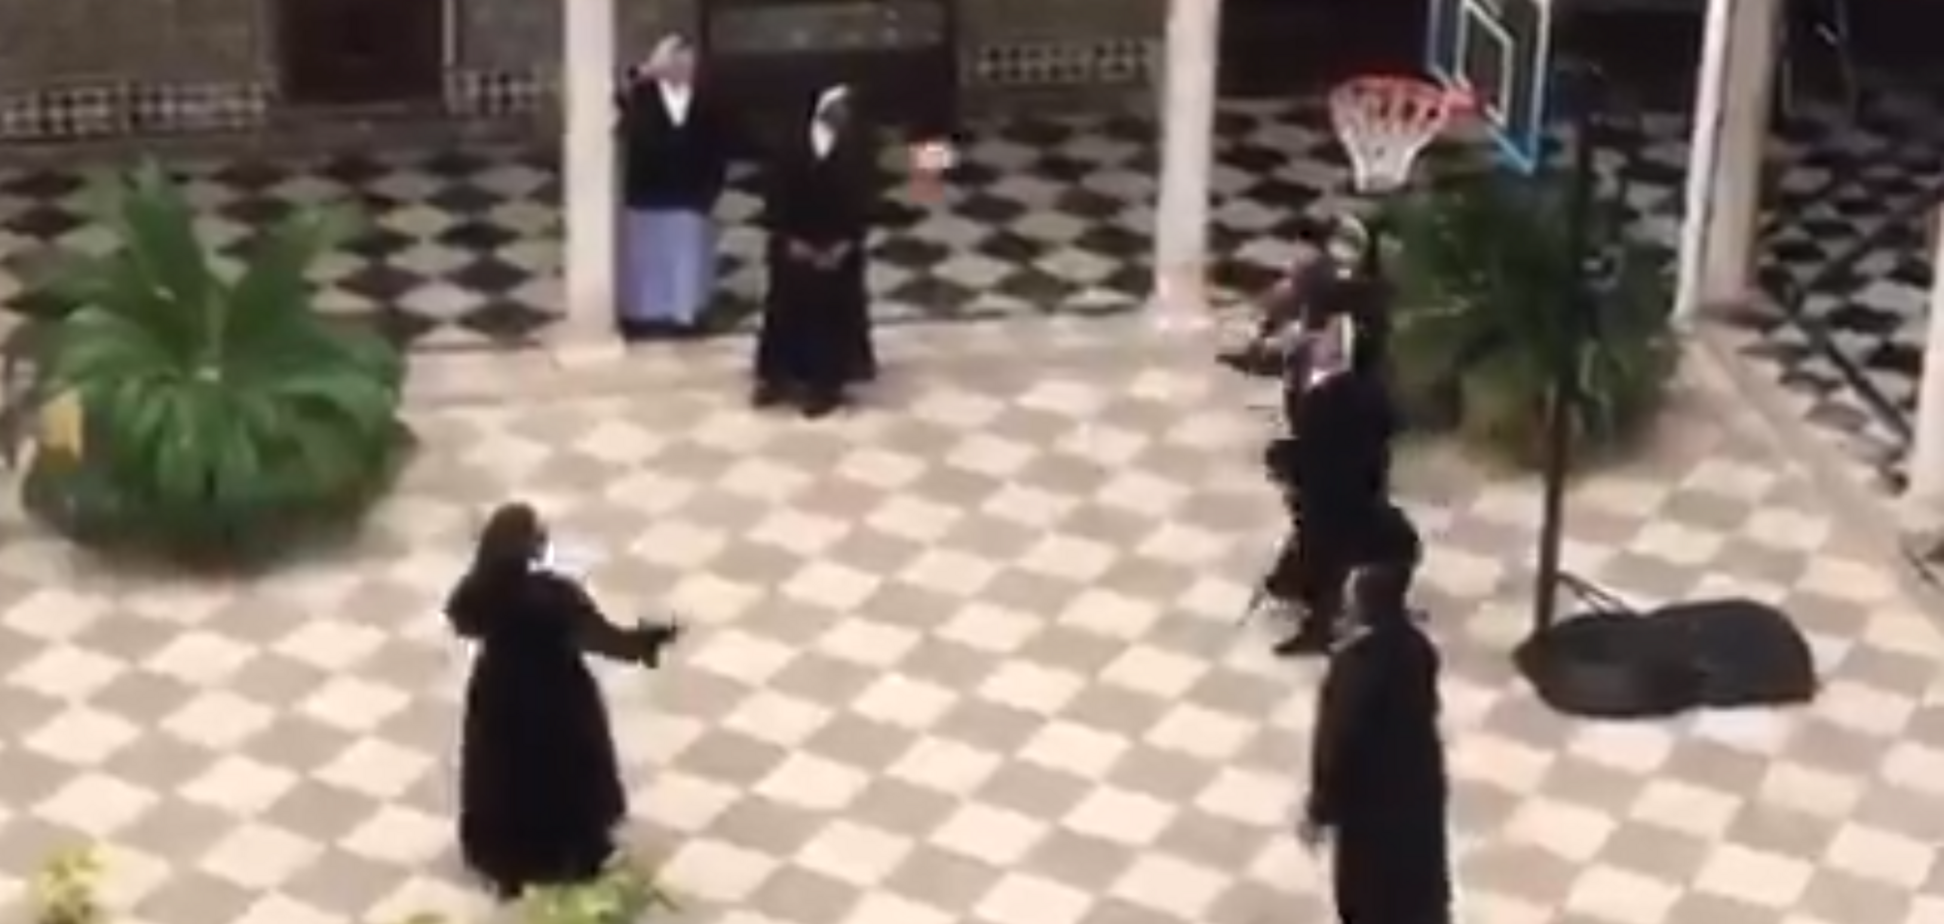 Монахини сыграли в баскетбол в монастыре с больными коронавирусом